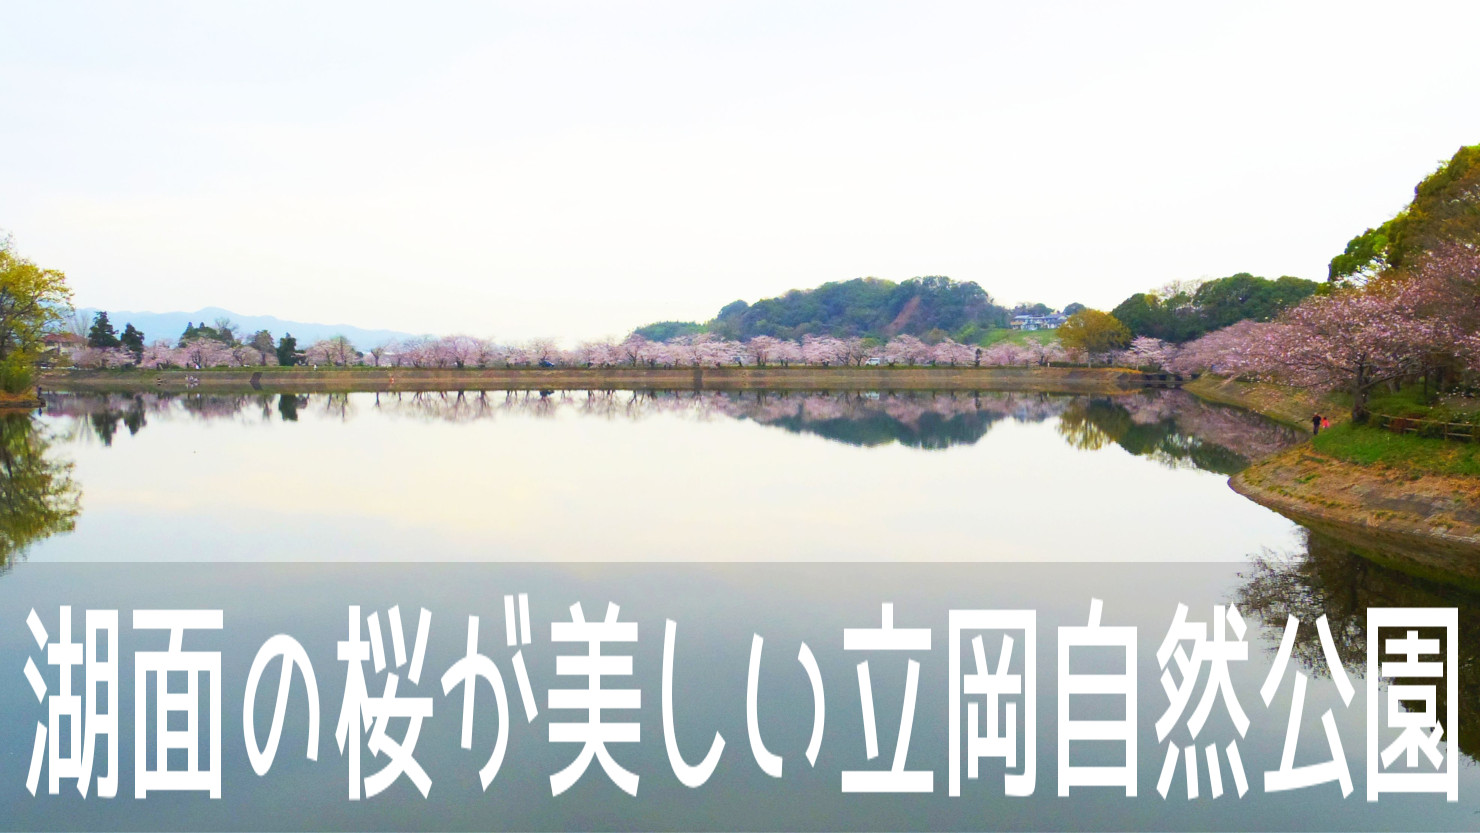 戦国武将の加藤清正が造った湖面に映る桜の絶景 立岡自然公園 こころんグリーンのお花畑